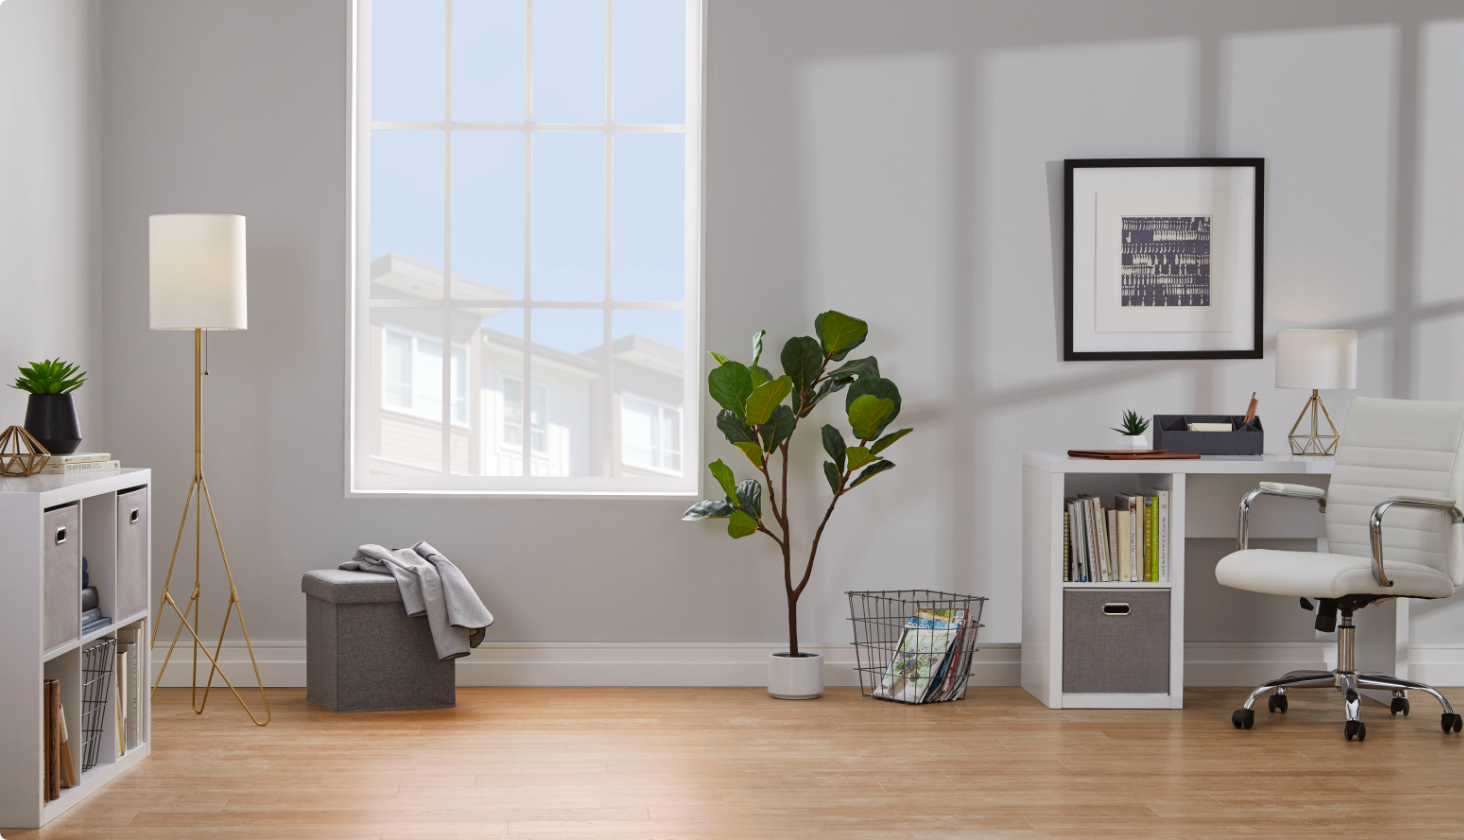 Bureau à domicile avec chaise blanche, bureau, plante verte au sol, lampadaire et articles décoratifs.